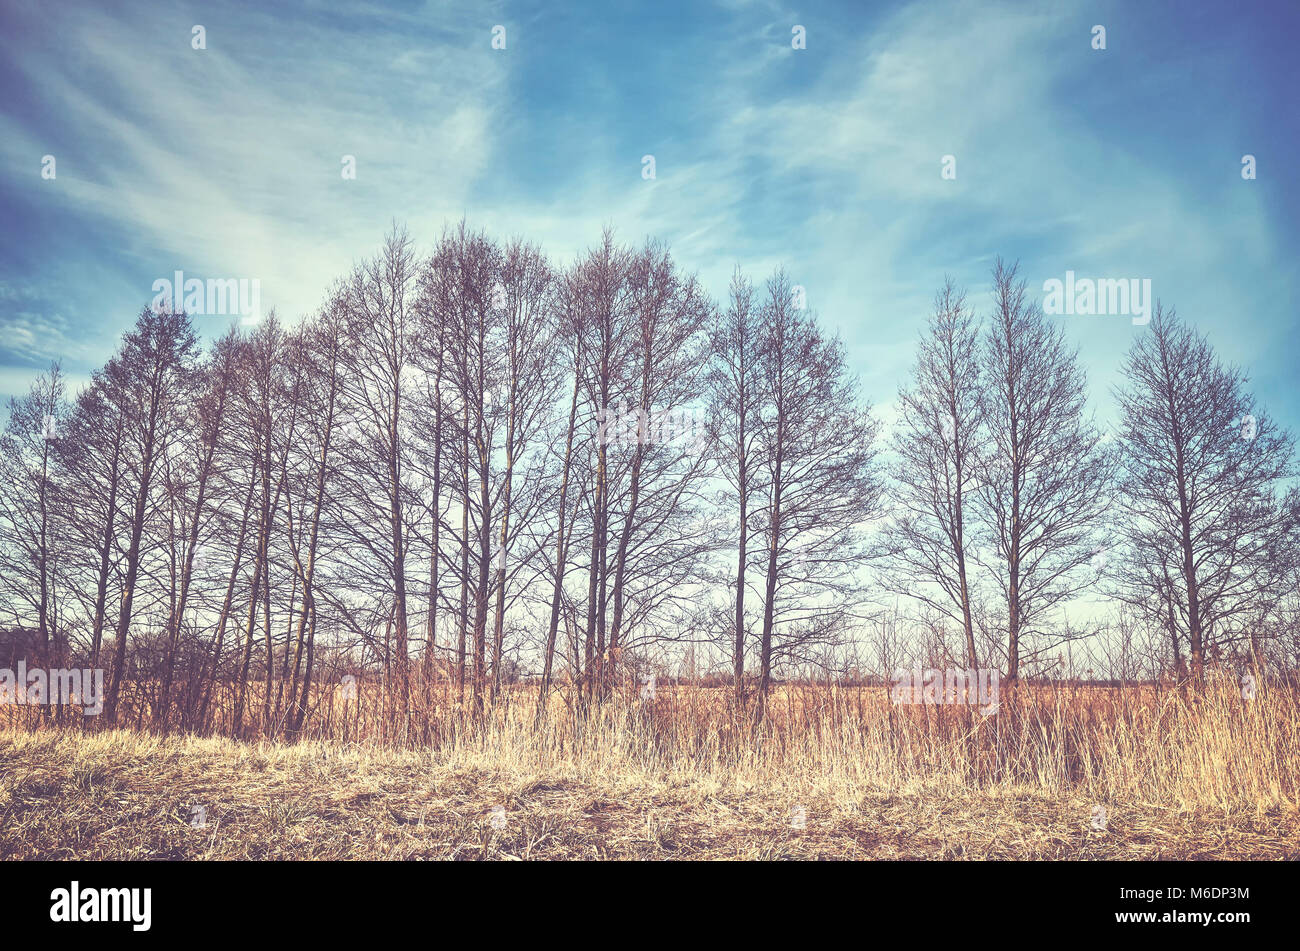 Paesaggio rurale con alberi in una fila, dai toni di colore dell'immagine. Foto Stock